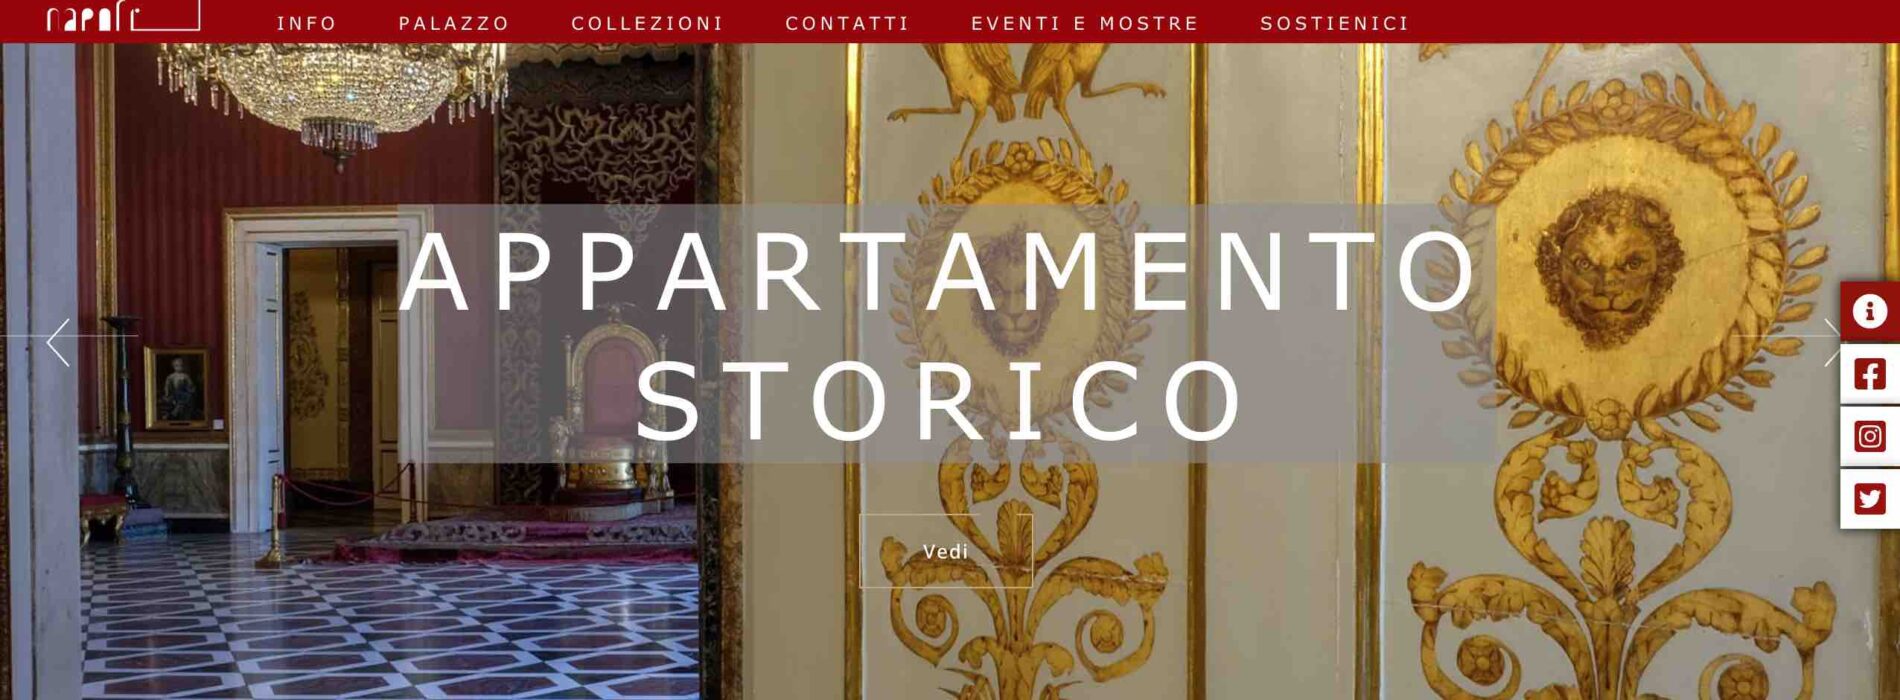 Palazzo Reale Napoli, dal 28 maggio online il sito del museo